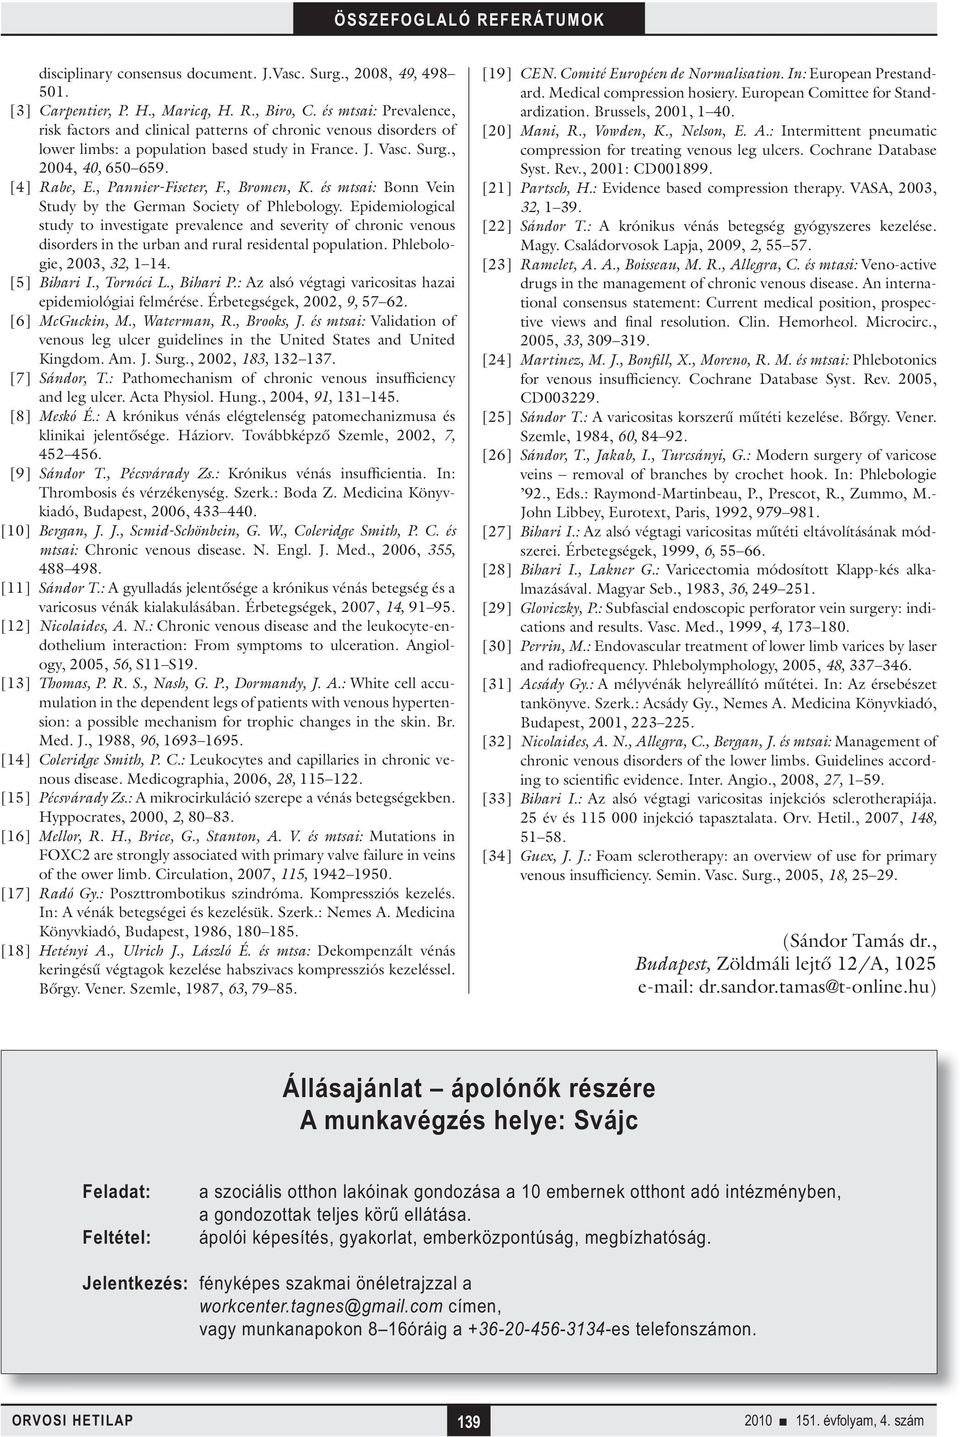 , Pannier-Fiseter, F., Bromen, K. és mtsai: Bonn Vein Study by the German Society of Phlebology.